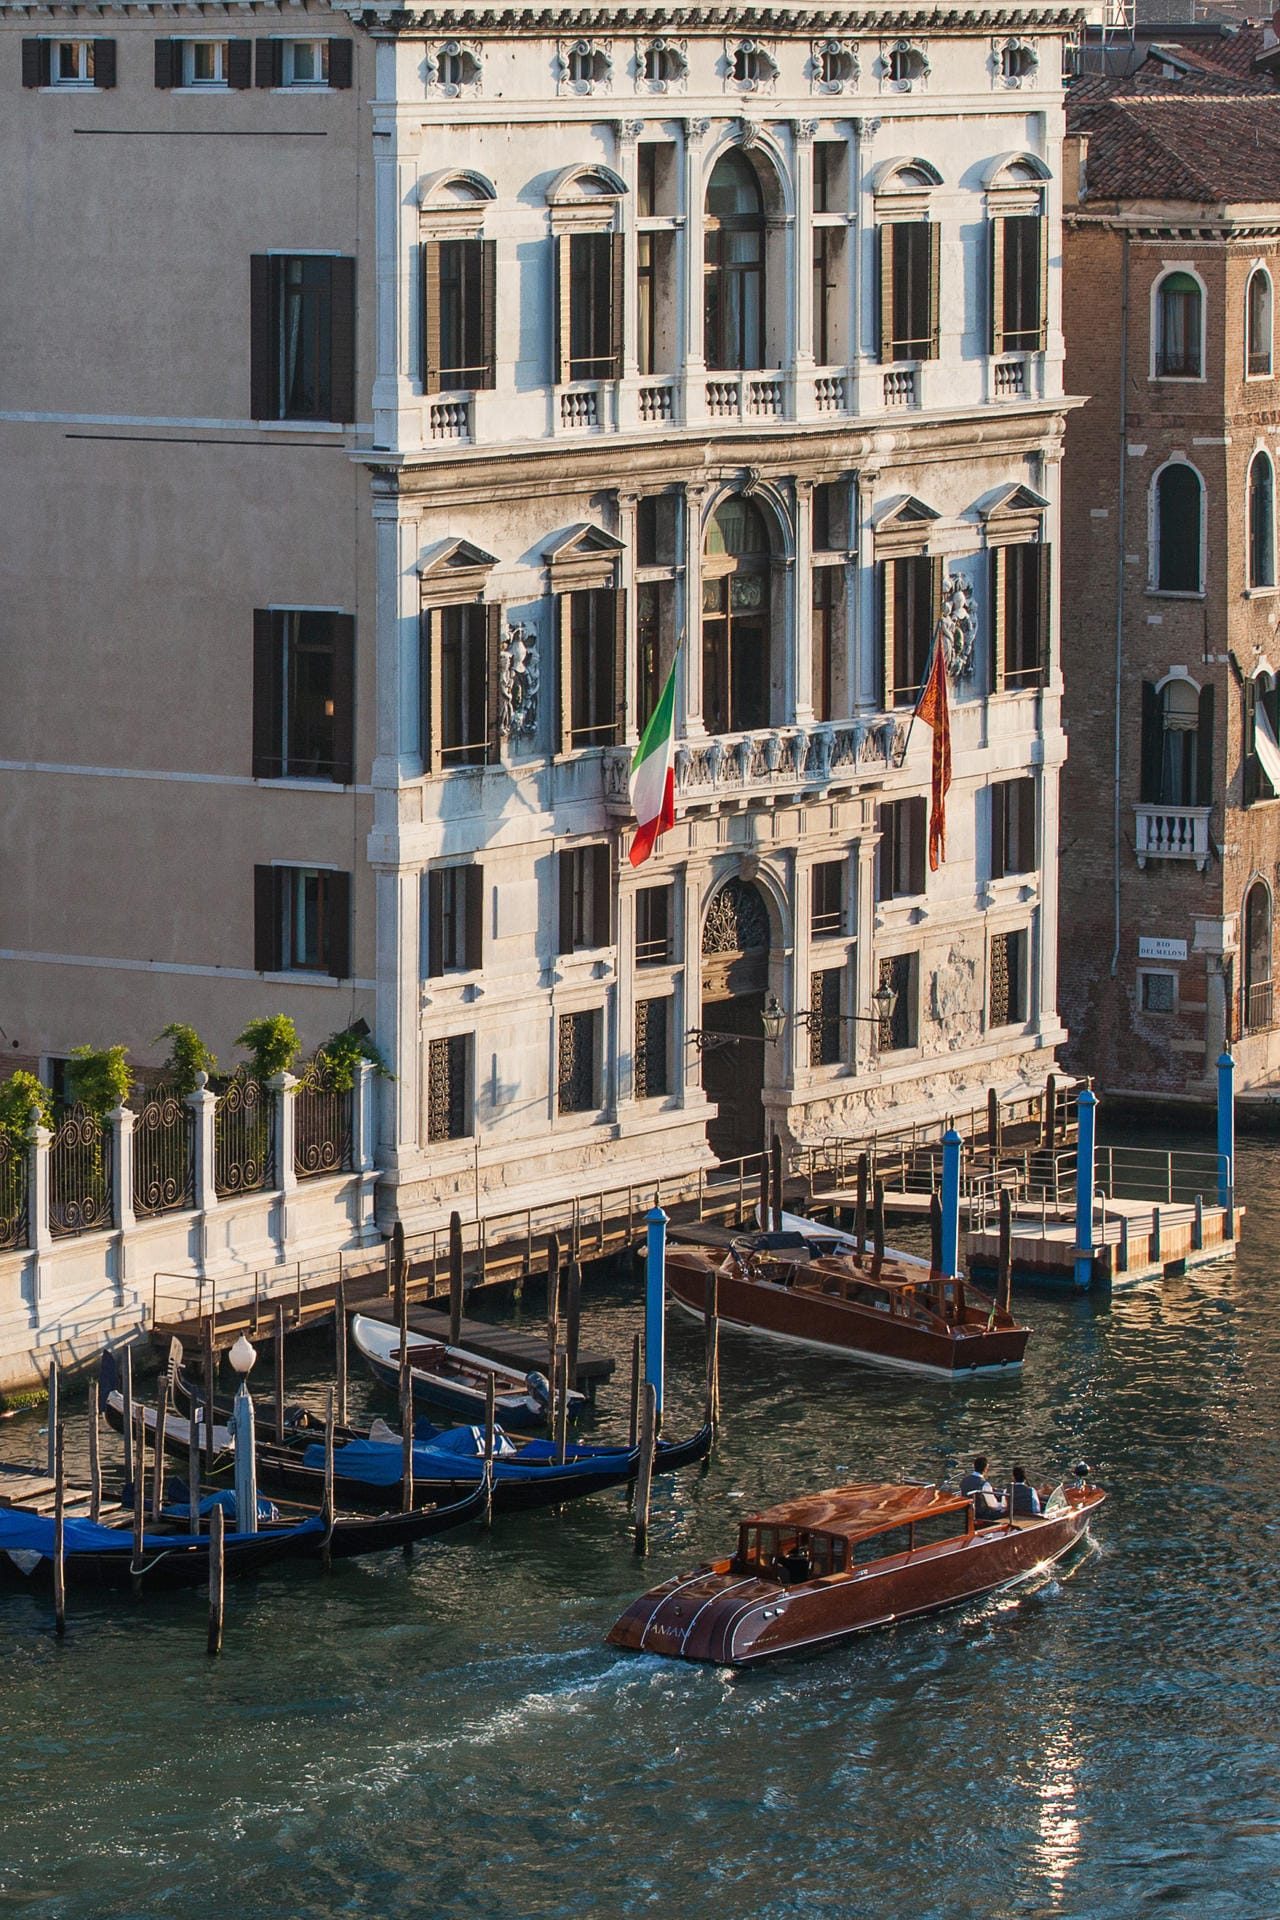 Nach außen verschwiegen, ultraluxuriös von innen: das Hotel "Aman" in Venedig.